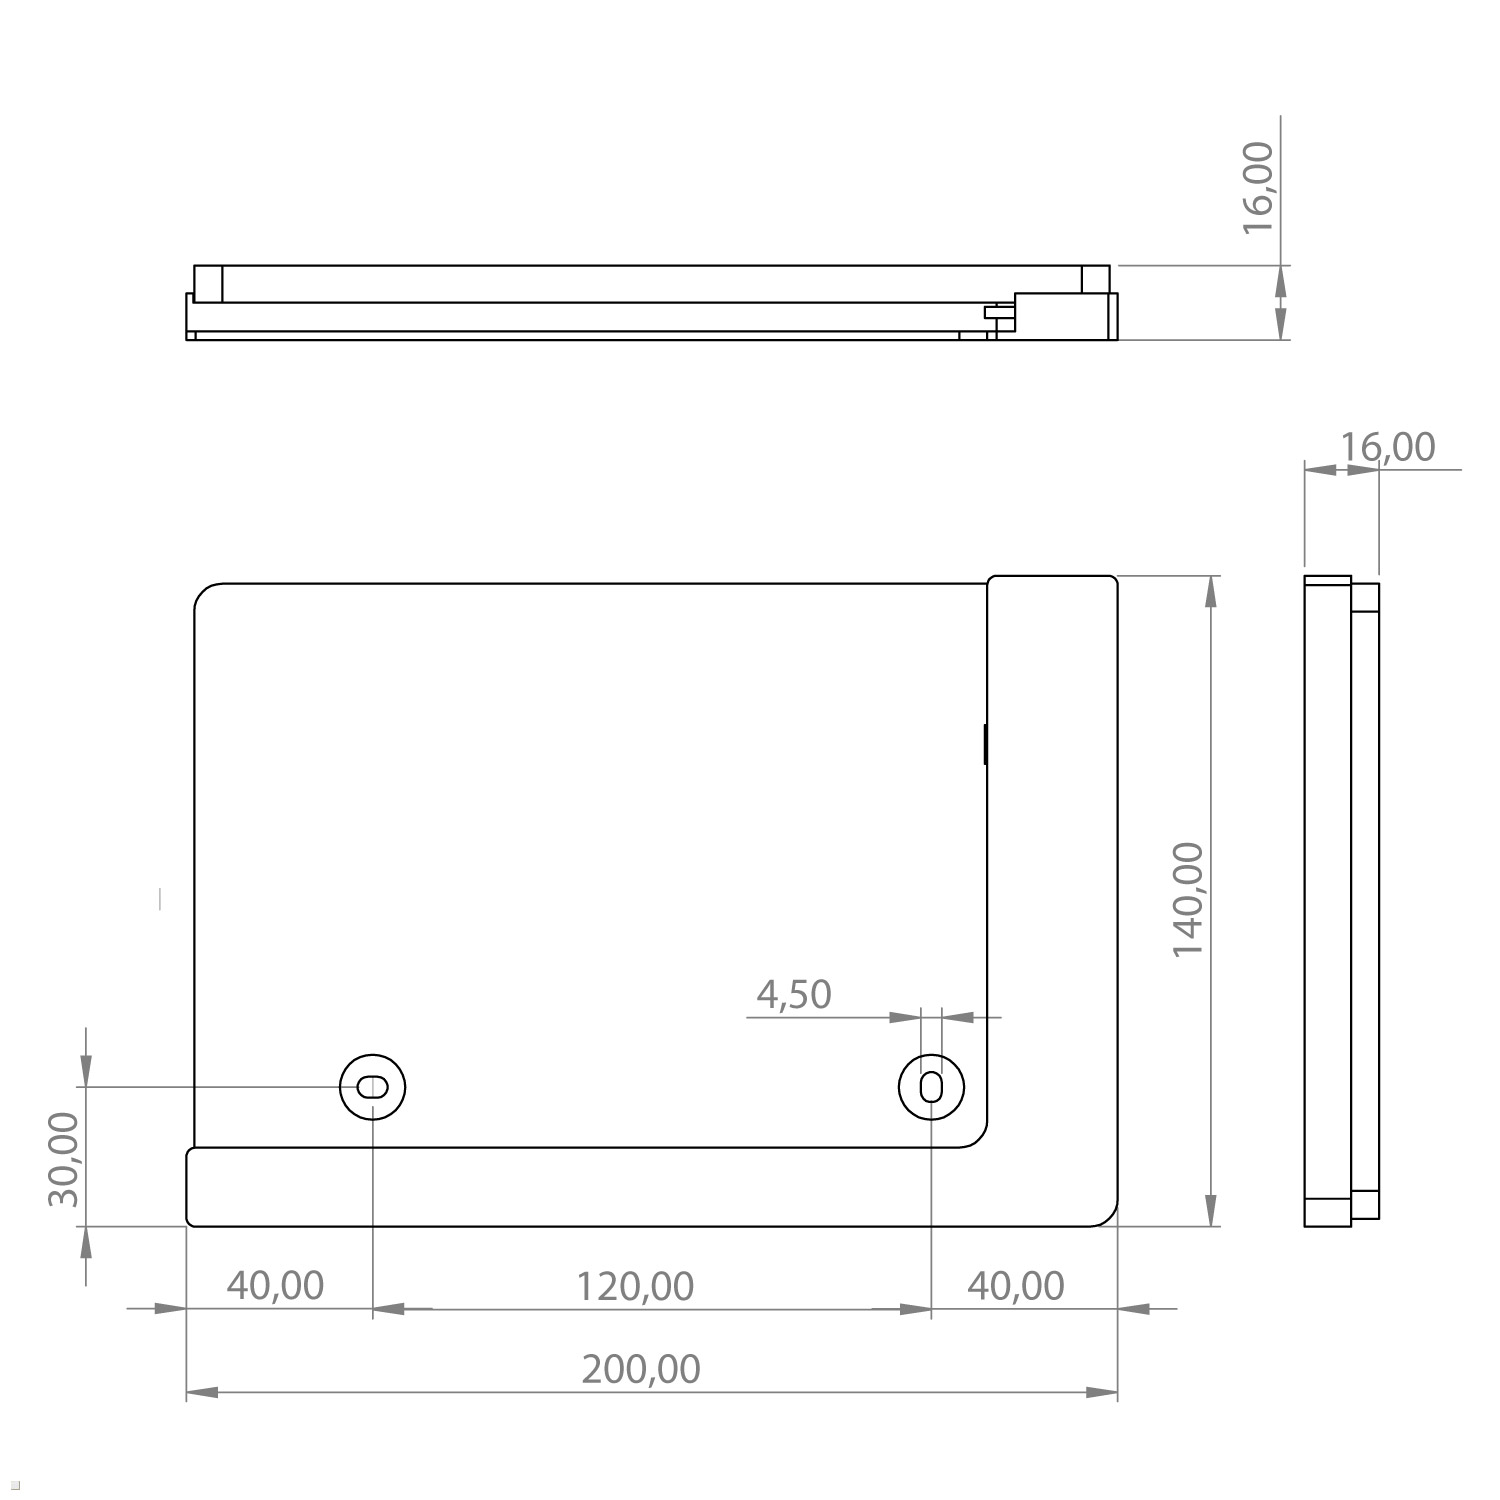 Tablethalter mit Wandhalterung, TWP 12.4 S7+ für Tab Samsung TABLINES schwarz Ladefunktion Tablet